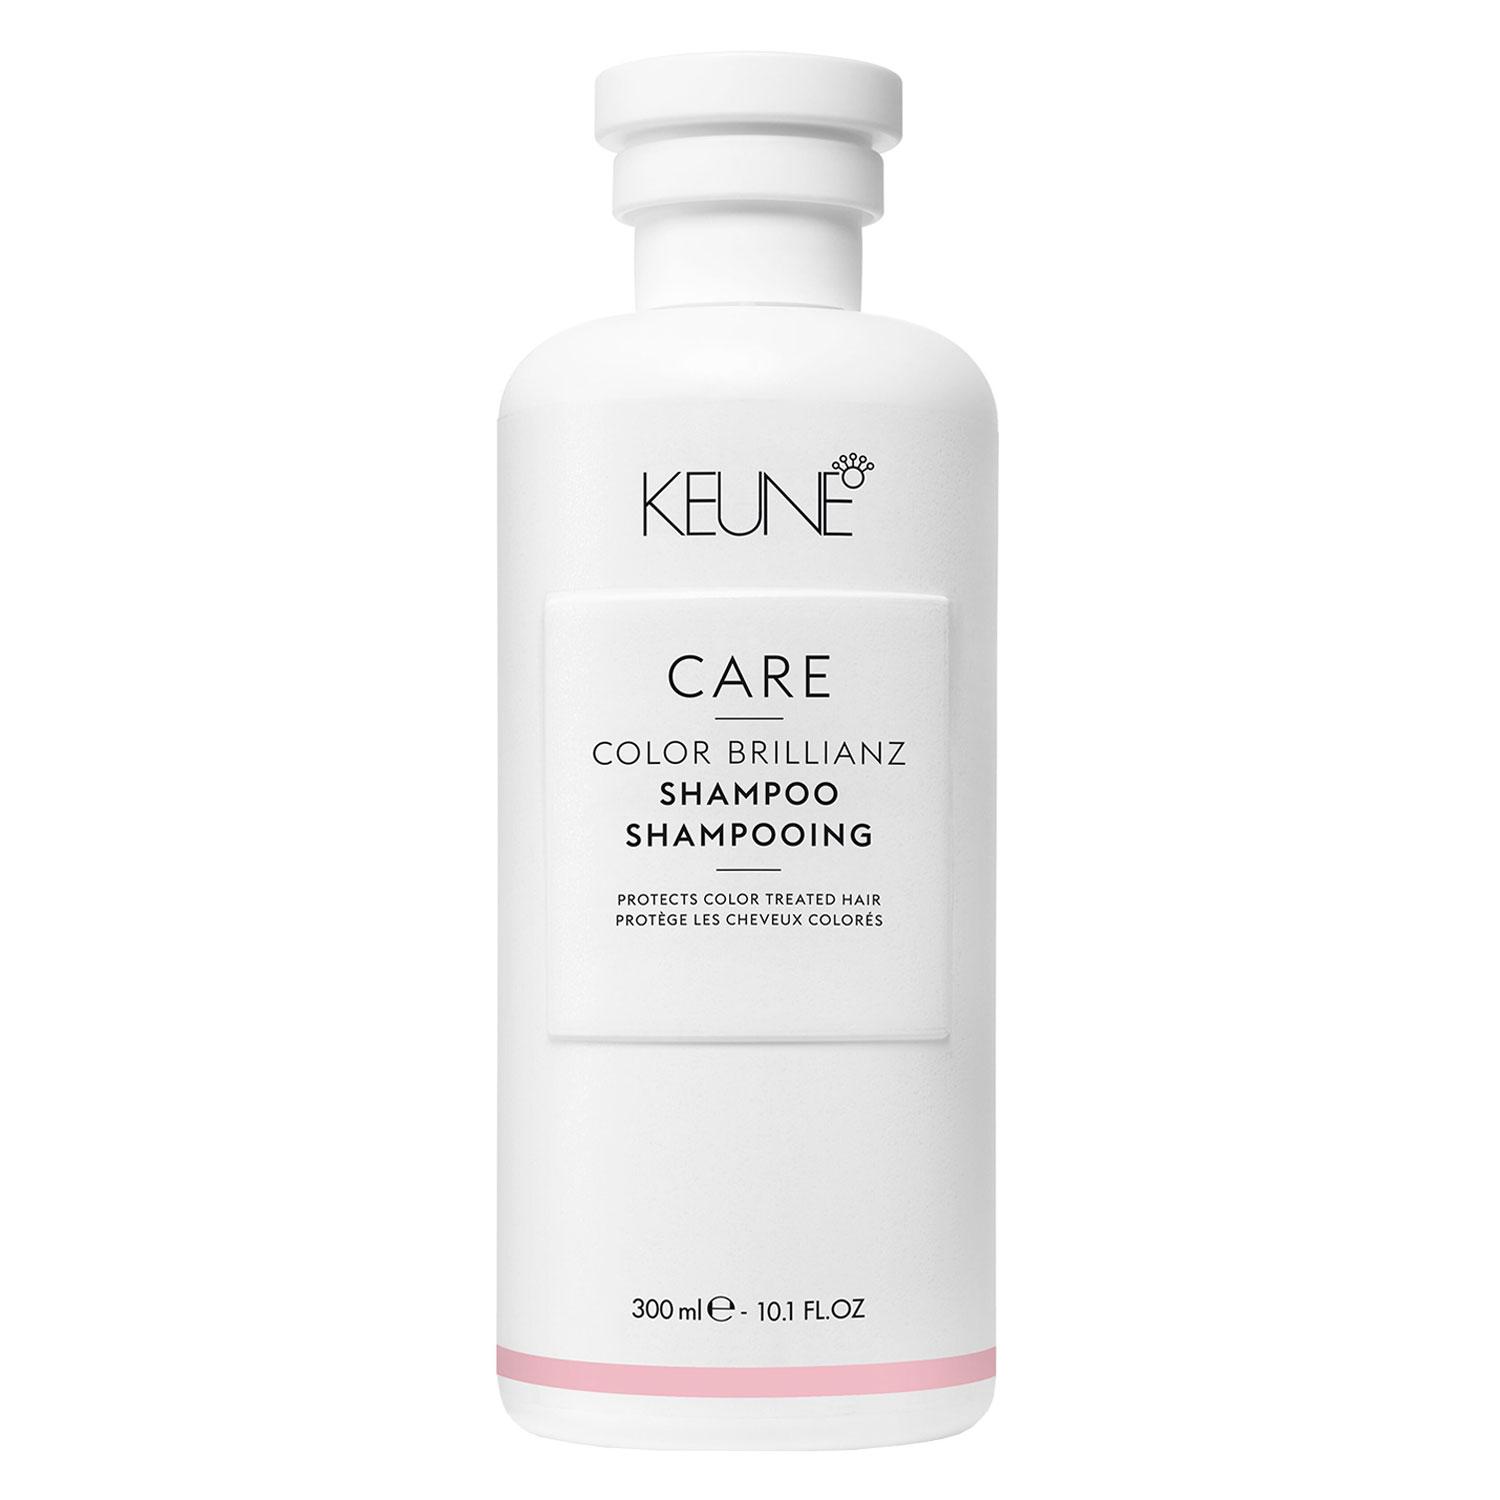 Keune Care - Color Brillianz Shampoo